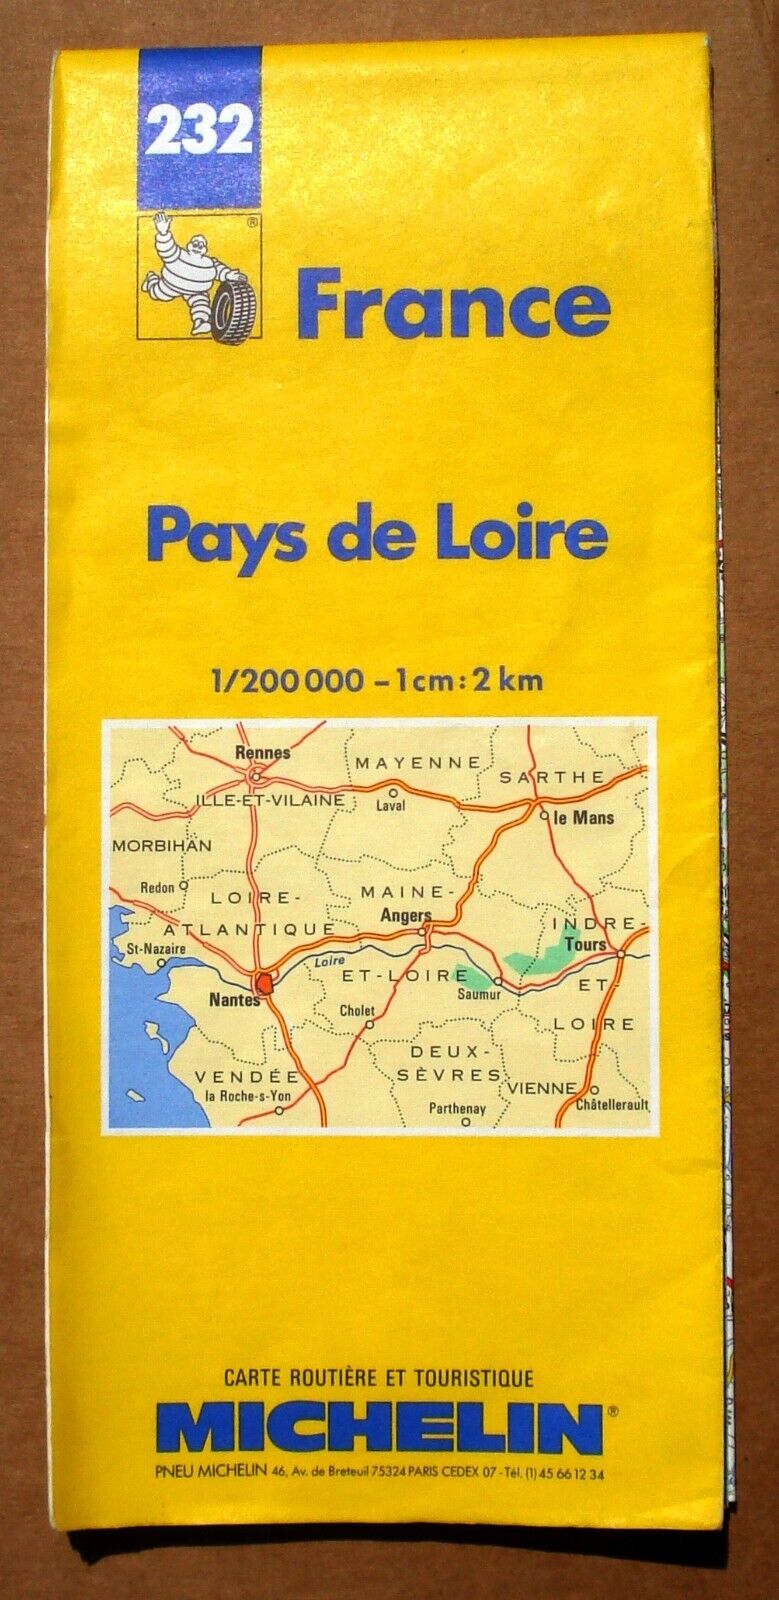 Michelin 232 Map of Pays de Loire France Vtg 1995 Road Regional